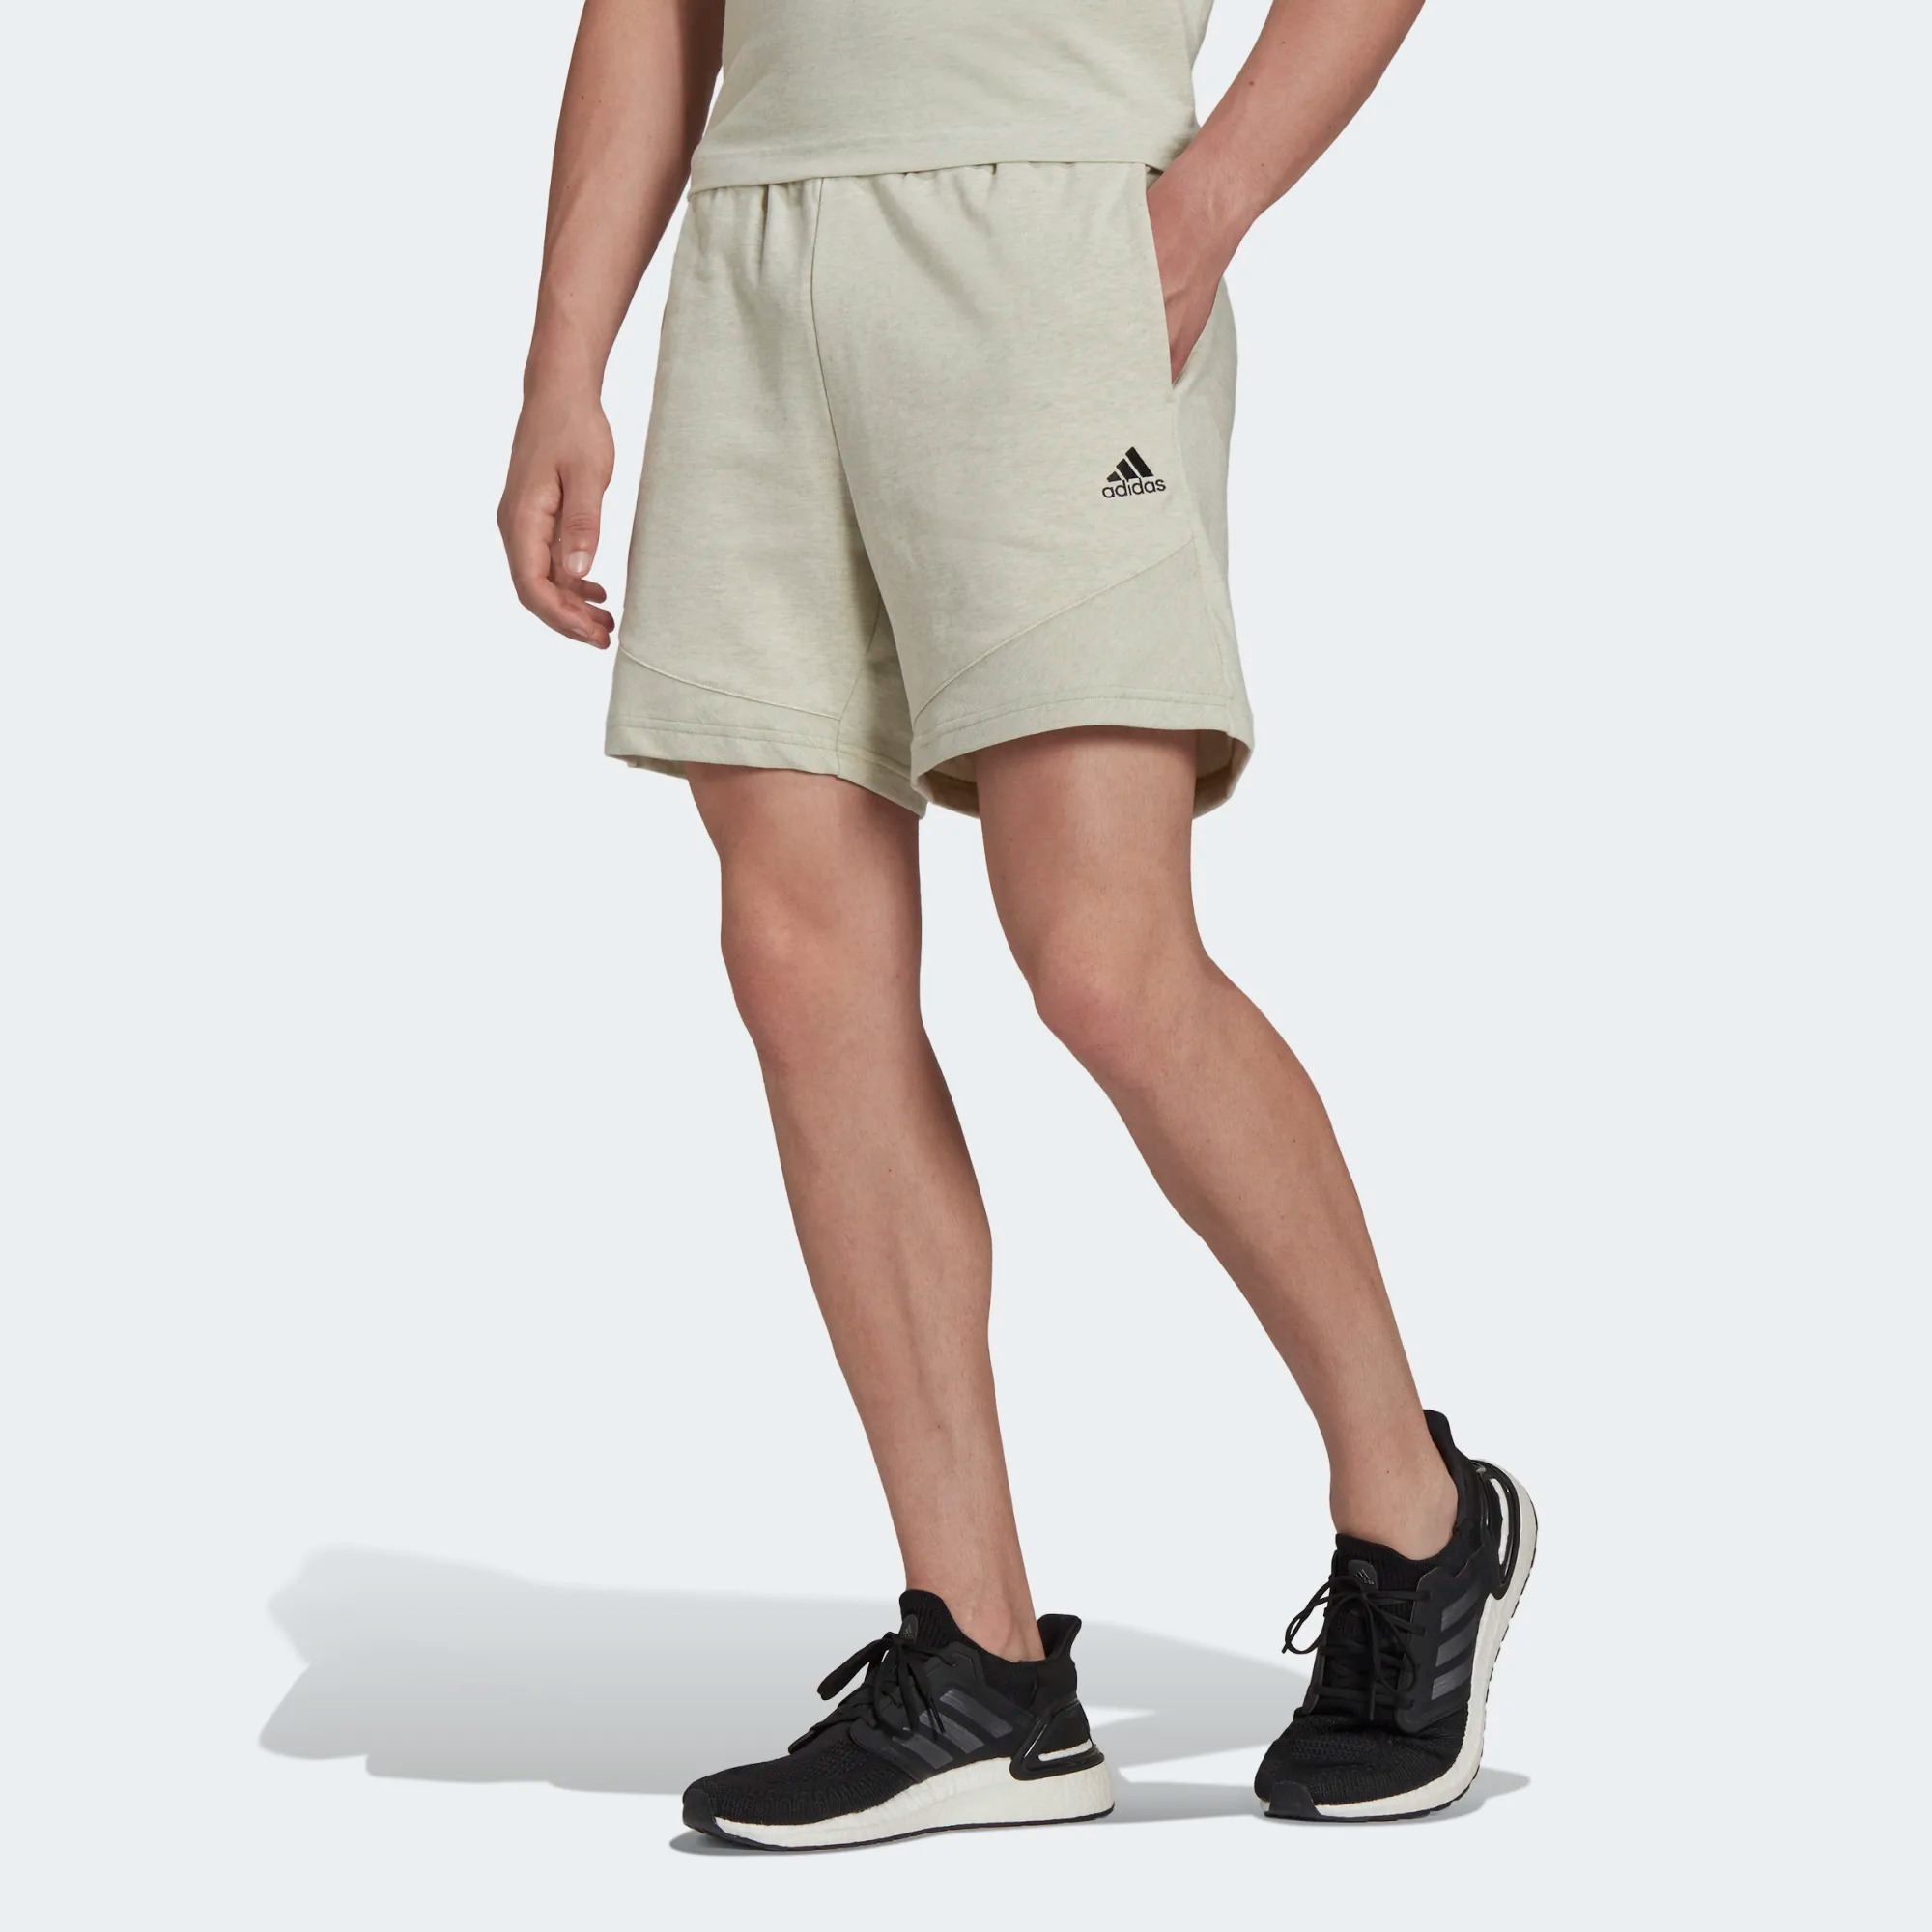 Спортивные шорты мужские Adidas Botanically Dyed Shorts серые S